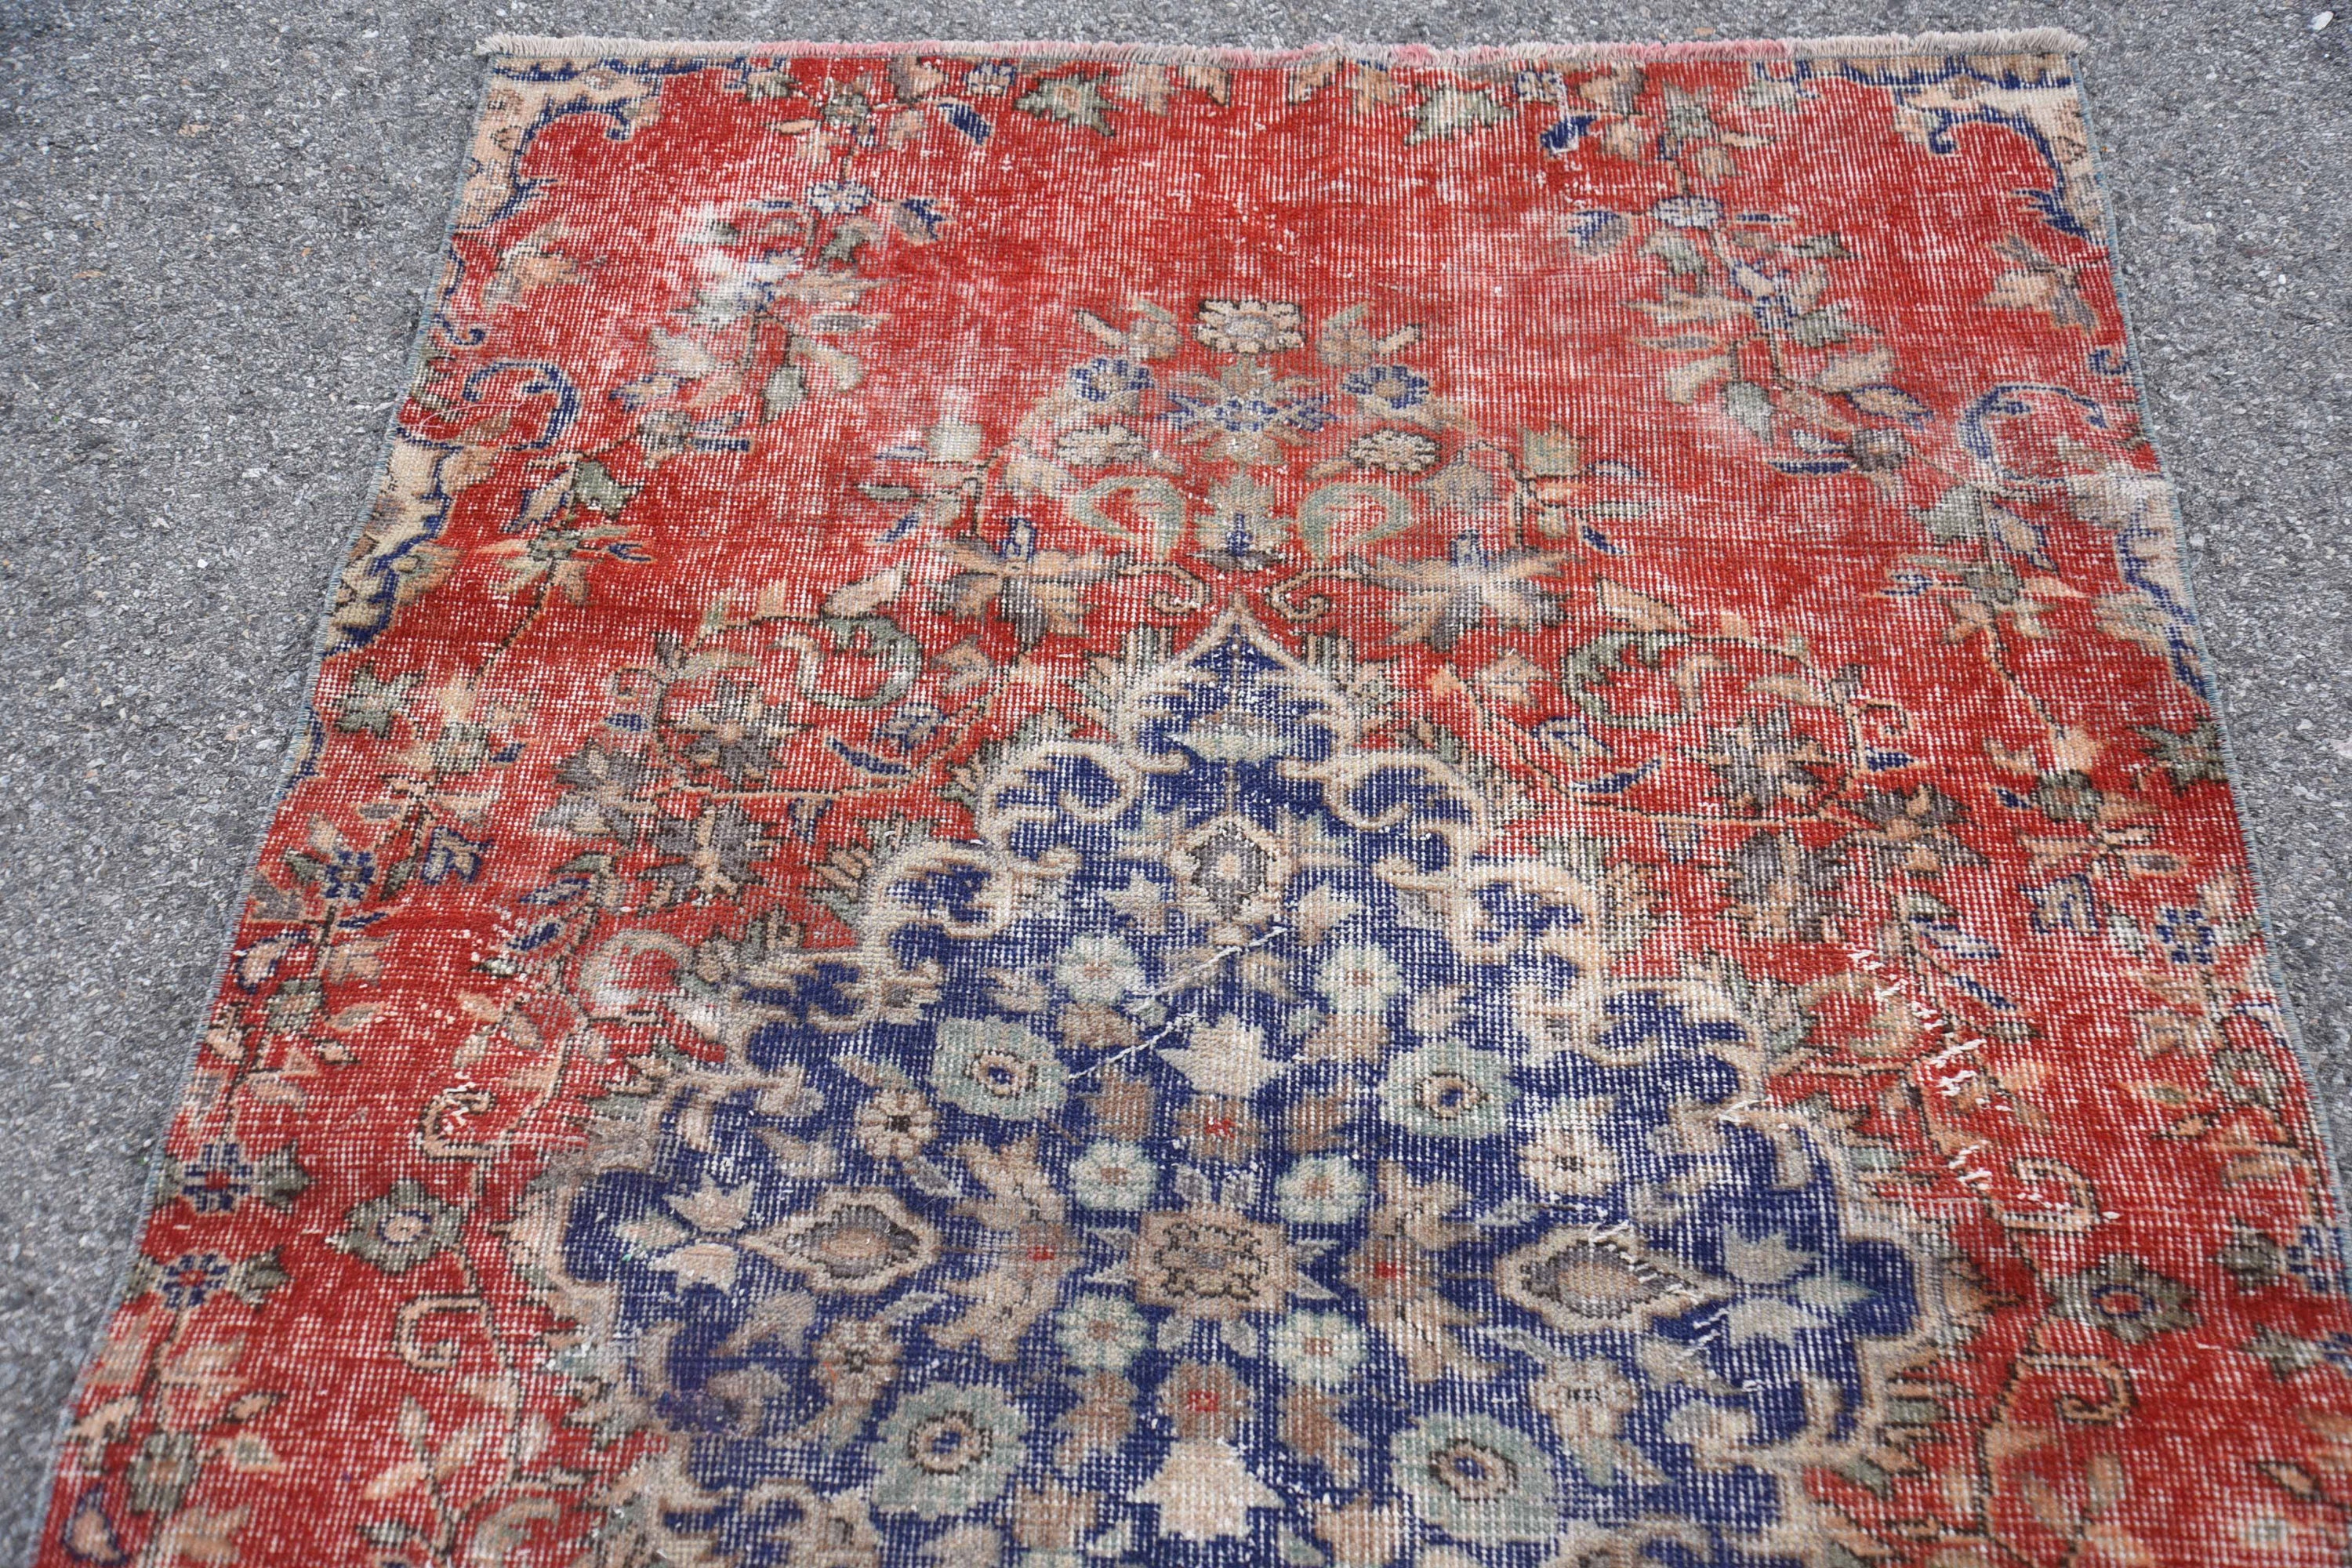 Bedroom Carpet Turkish Rug Antique Carpet Vintage Rug Turkey Floor Carpet 47x78 inches Beige Carpet Office Rug 524 Area Rug